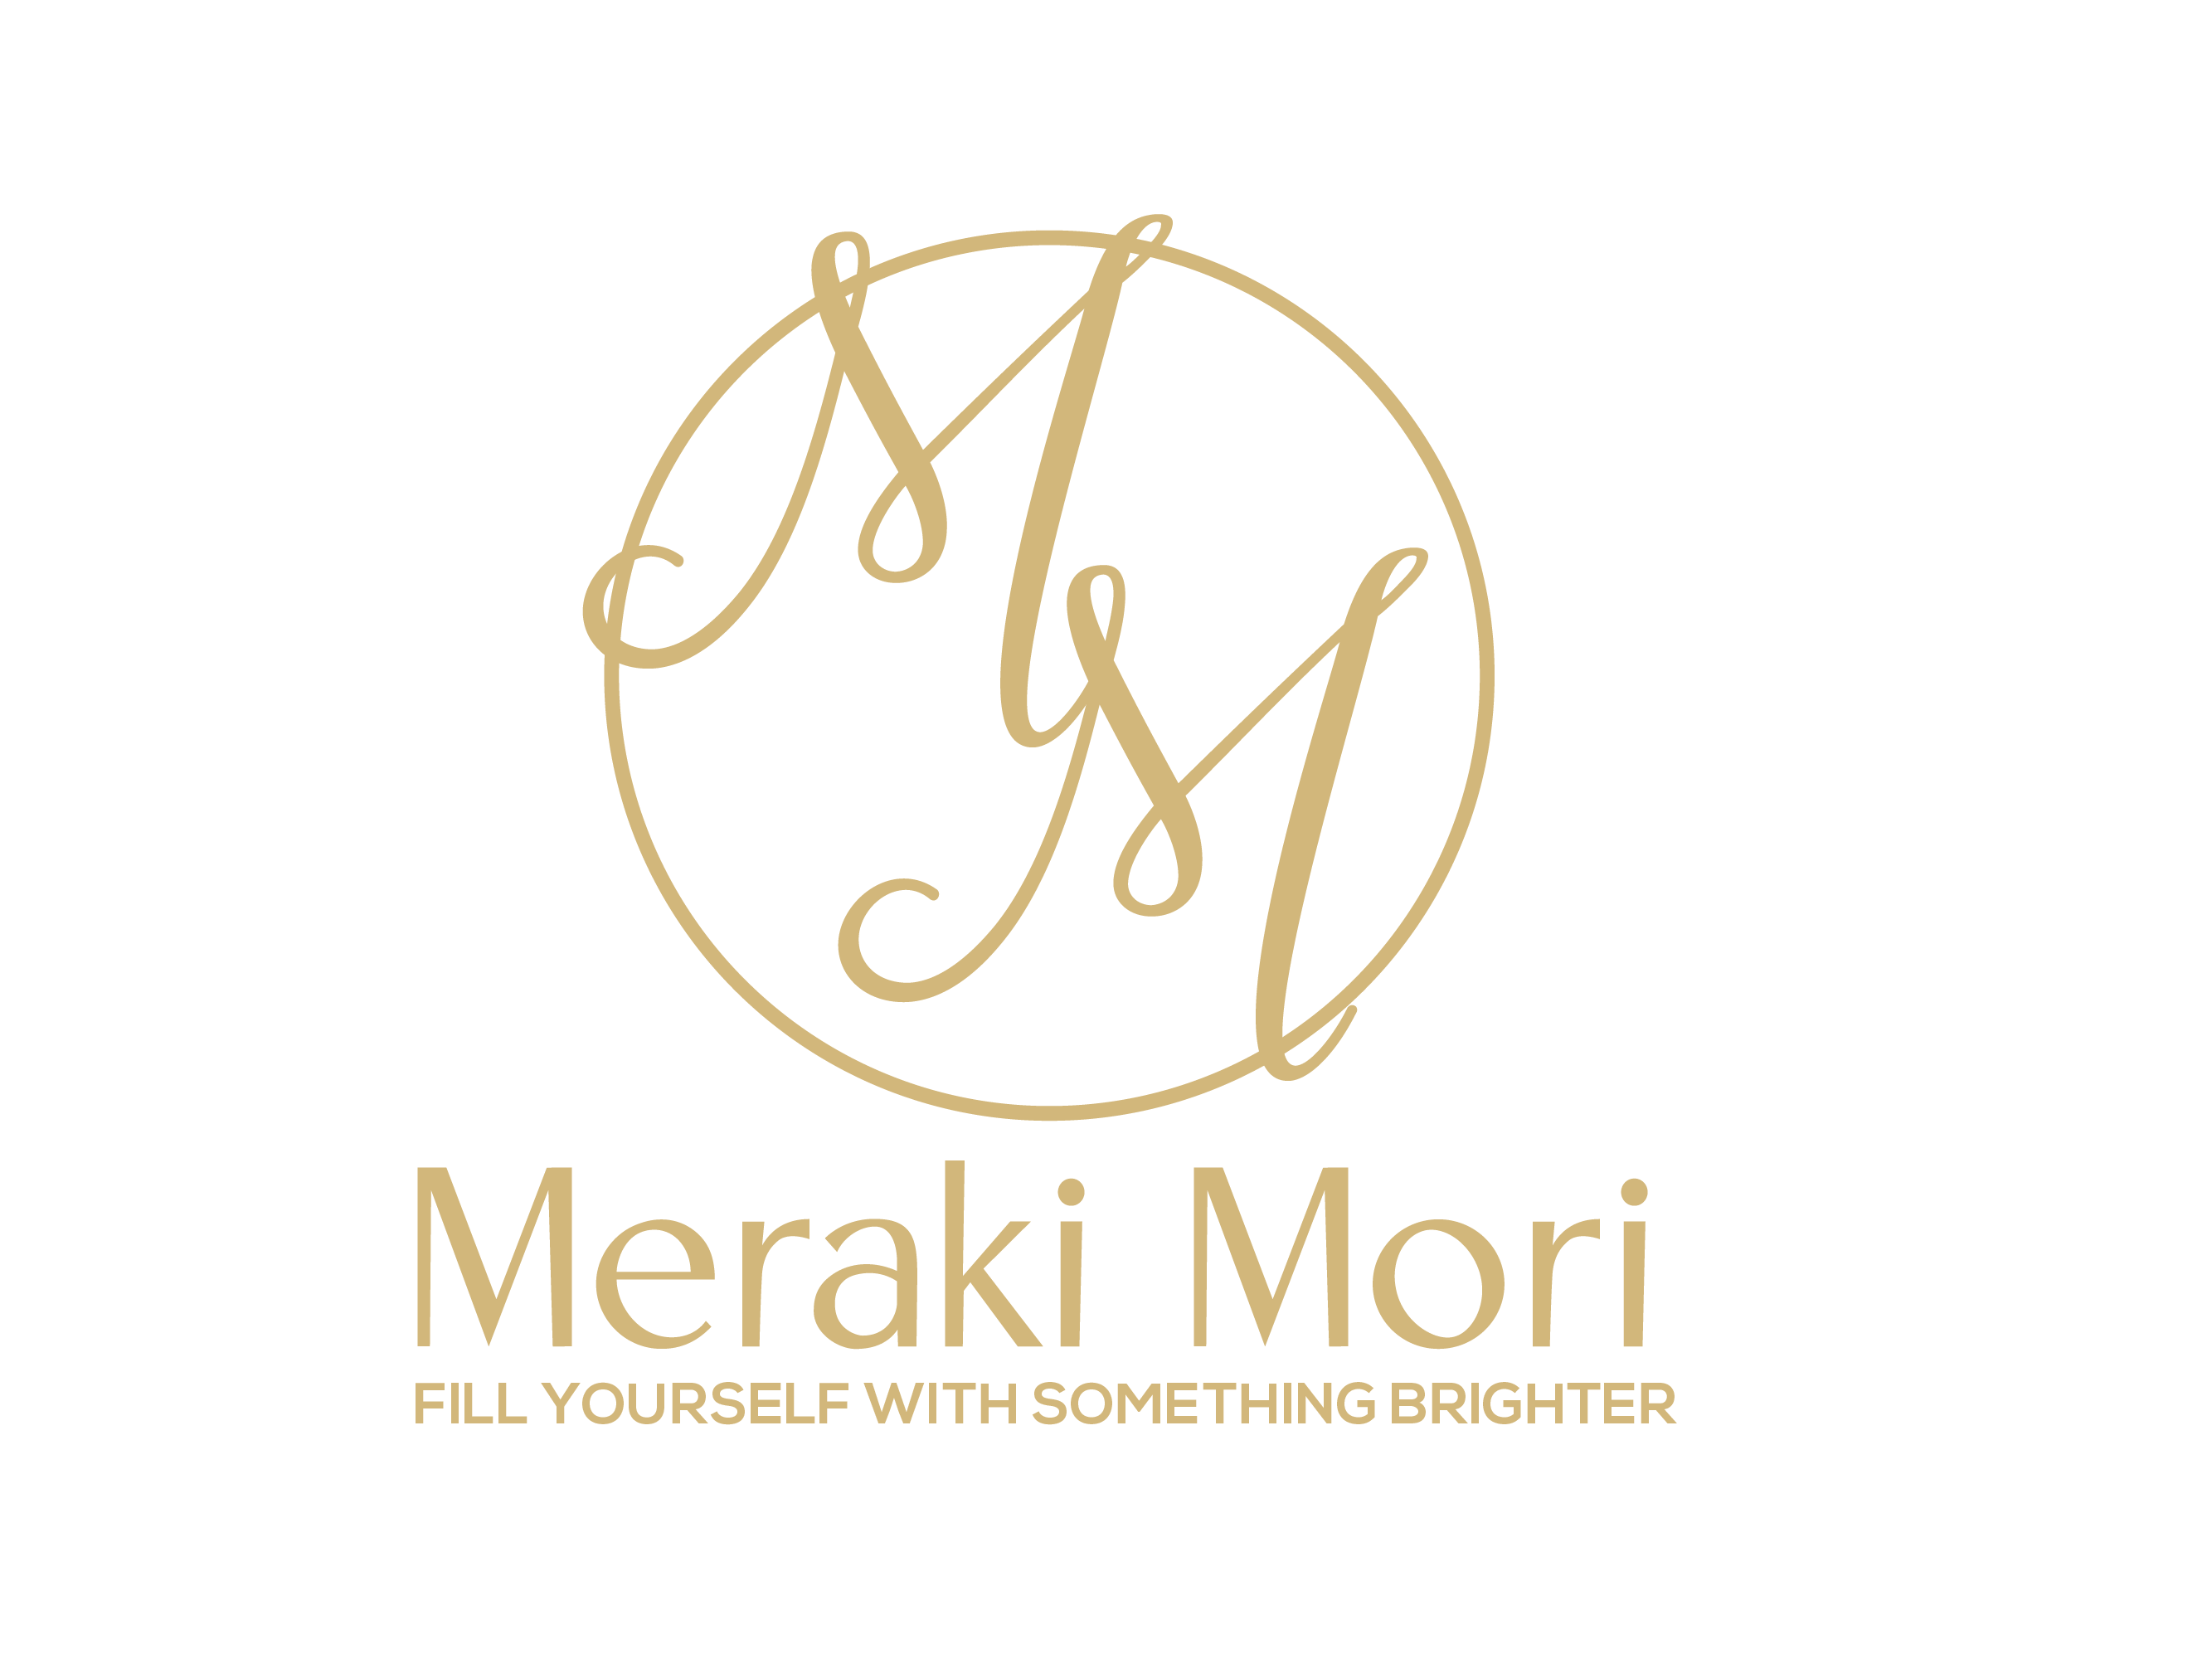 Meraki Mori